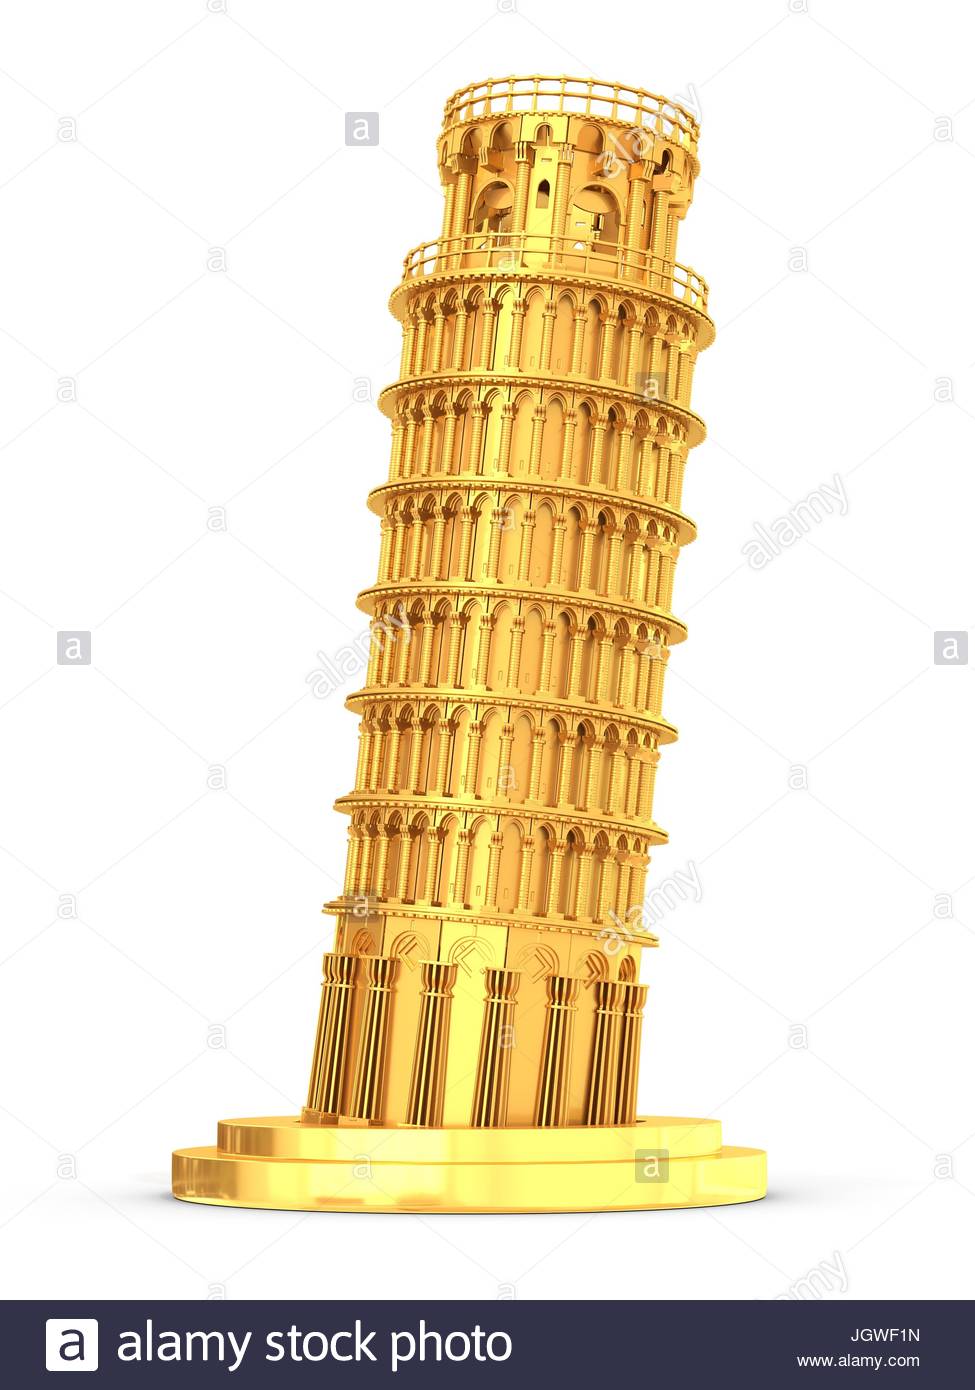 золотая башня